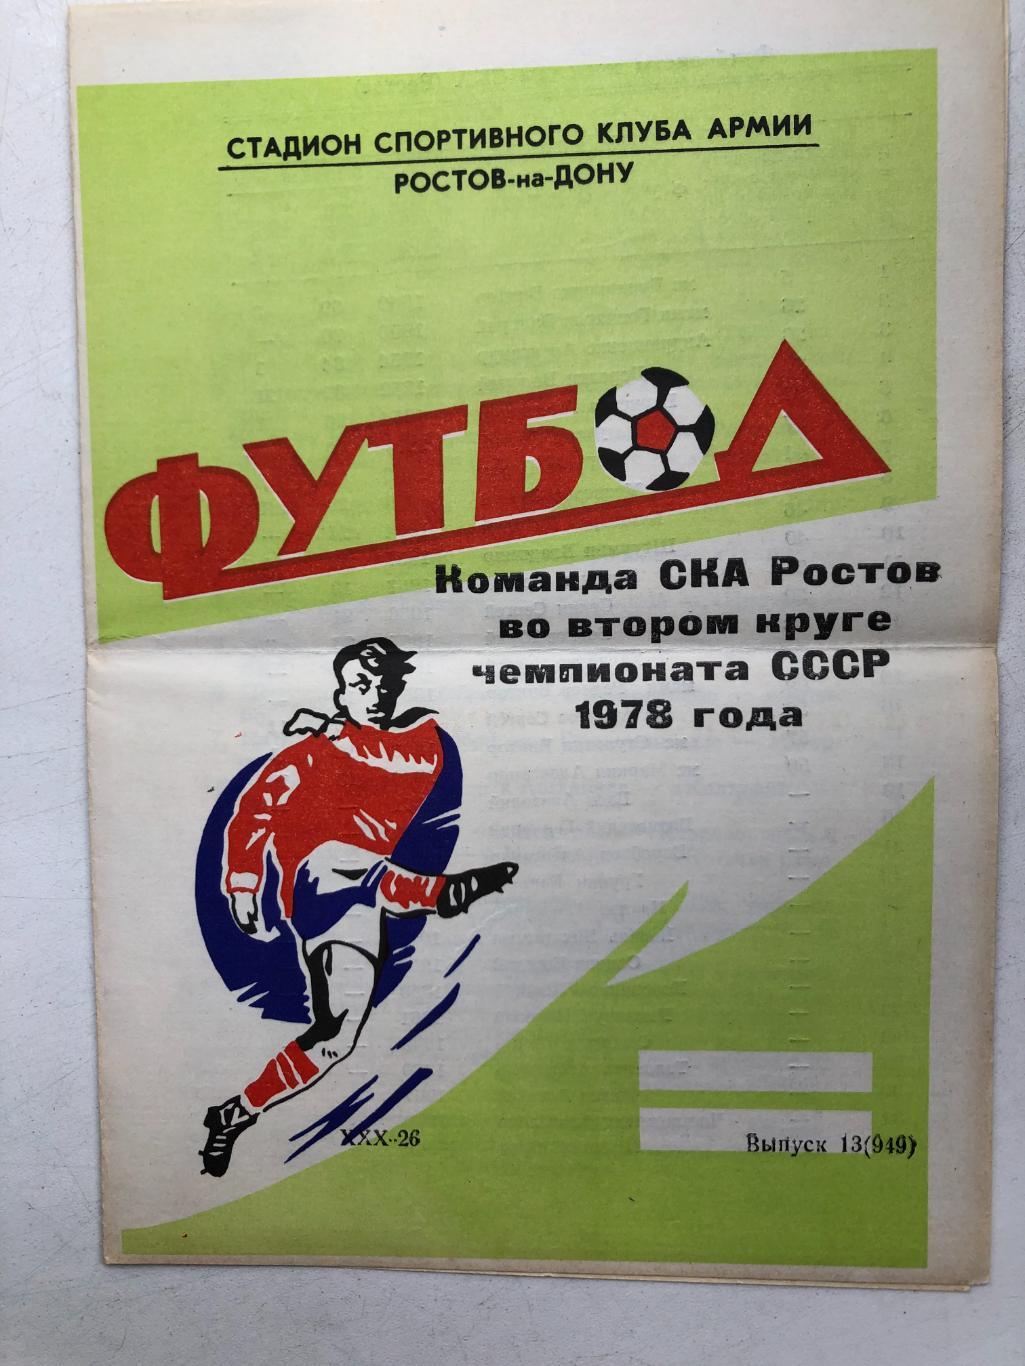 Команда СКА Ростов во втором круге чемпионата СССР 1978 года